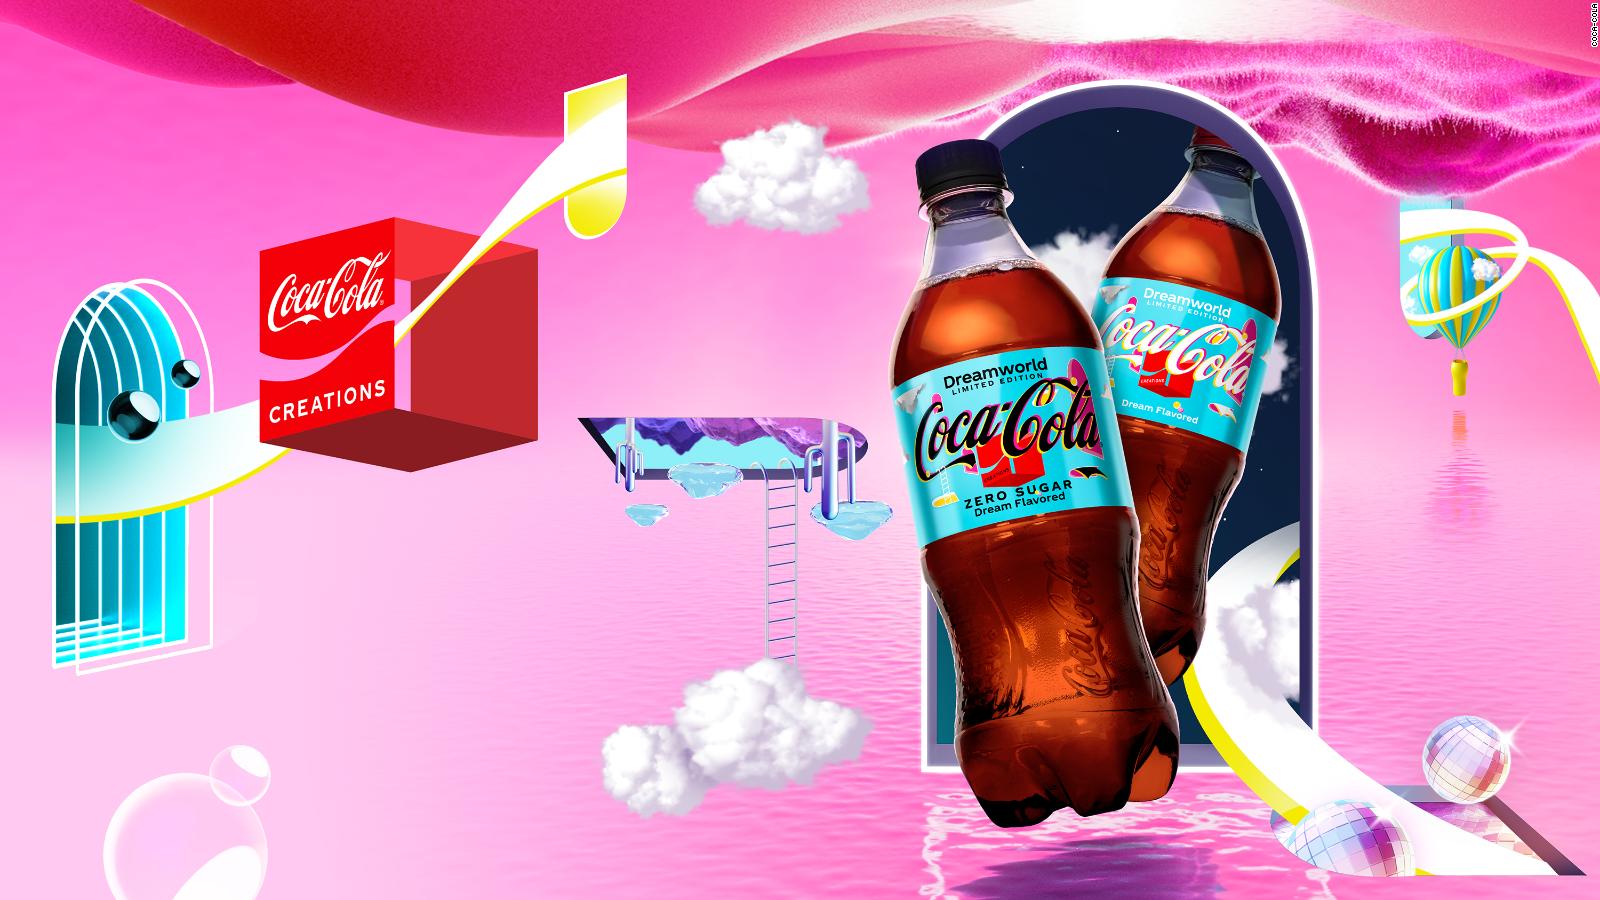 CocaCola lanza un nuevo sabor bastante extraño... ¿Lo probarías?